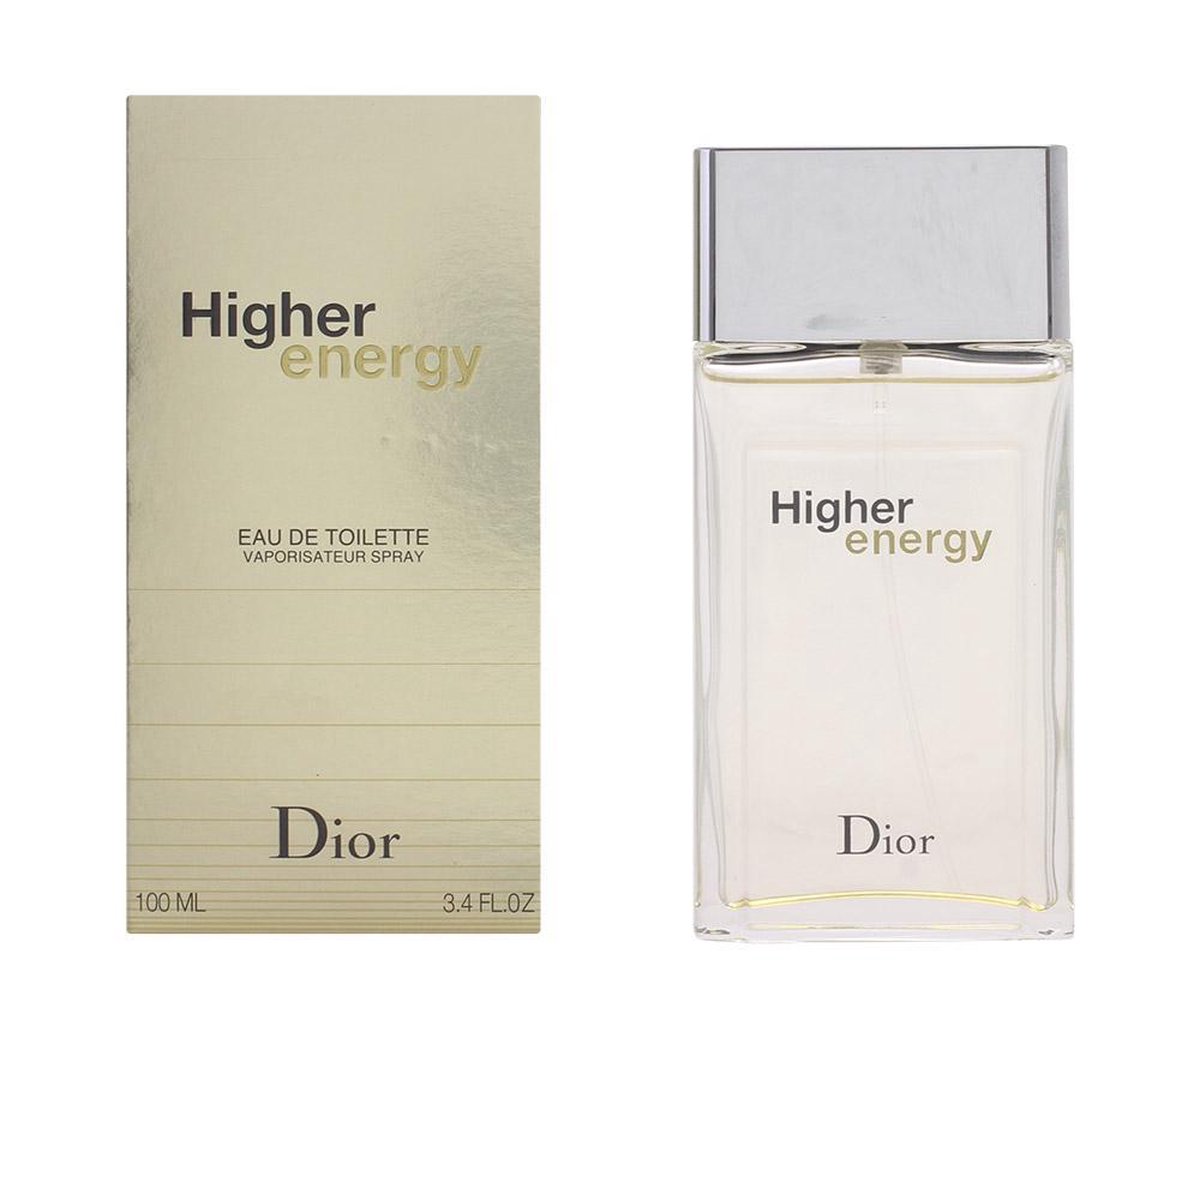 Диор higher Energy. Higher Energy от Christian Dior. Парфюм Dior higher Energy. Christian Dior higher Energy дезодорант.